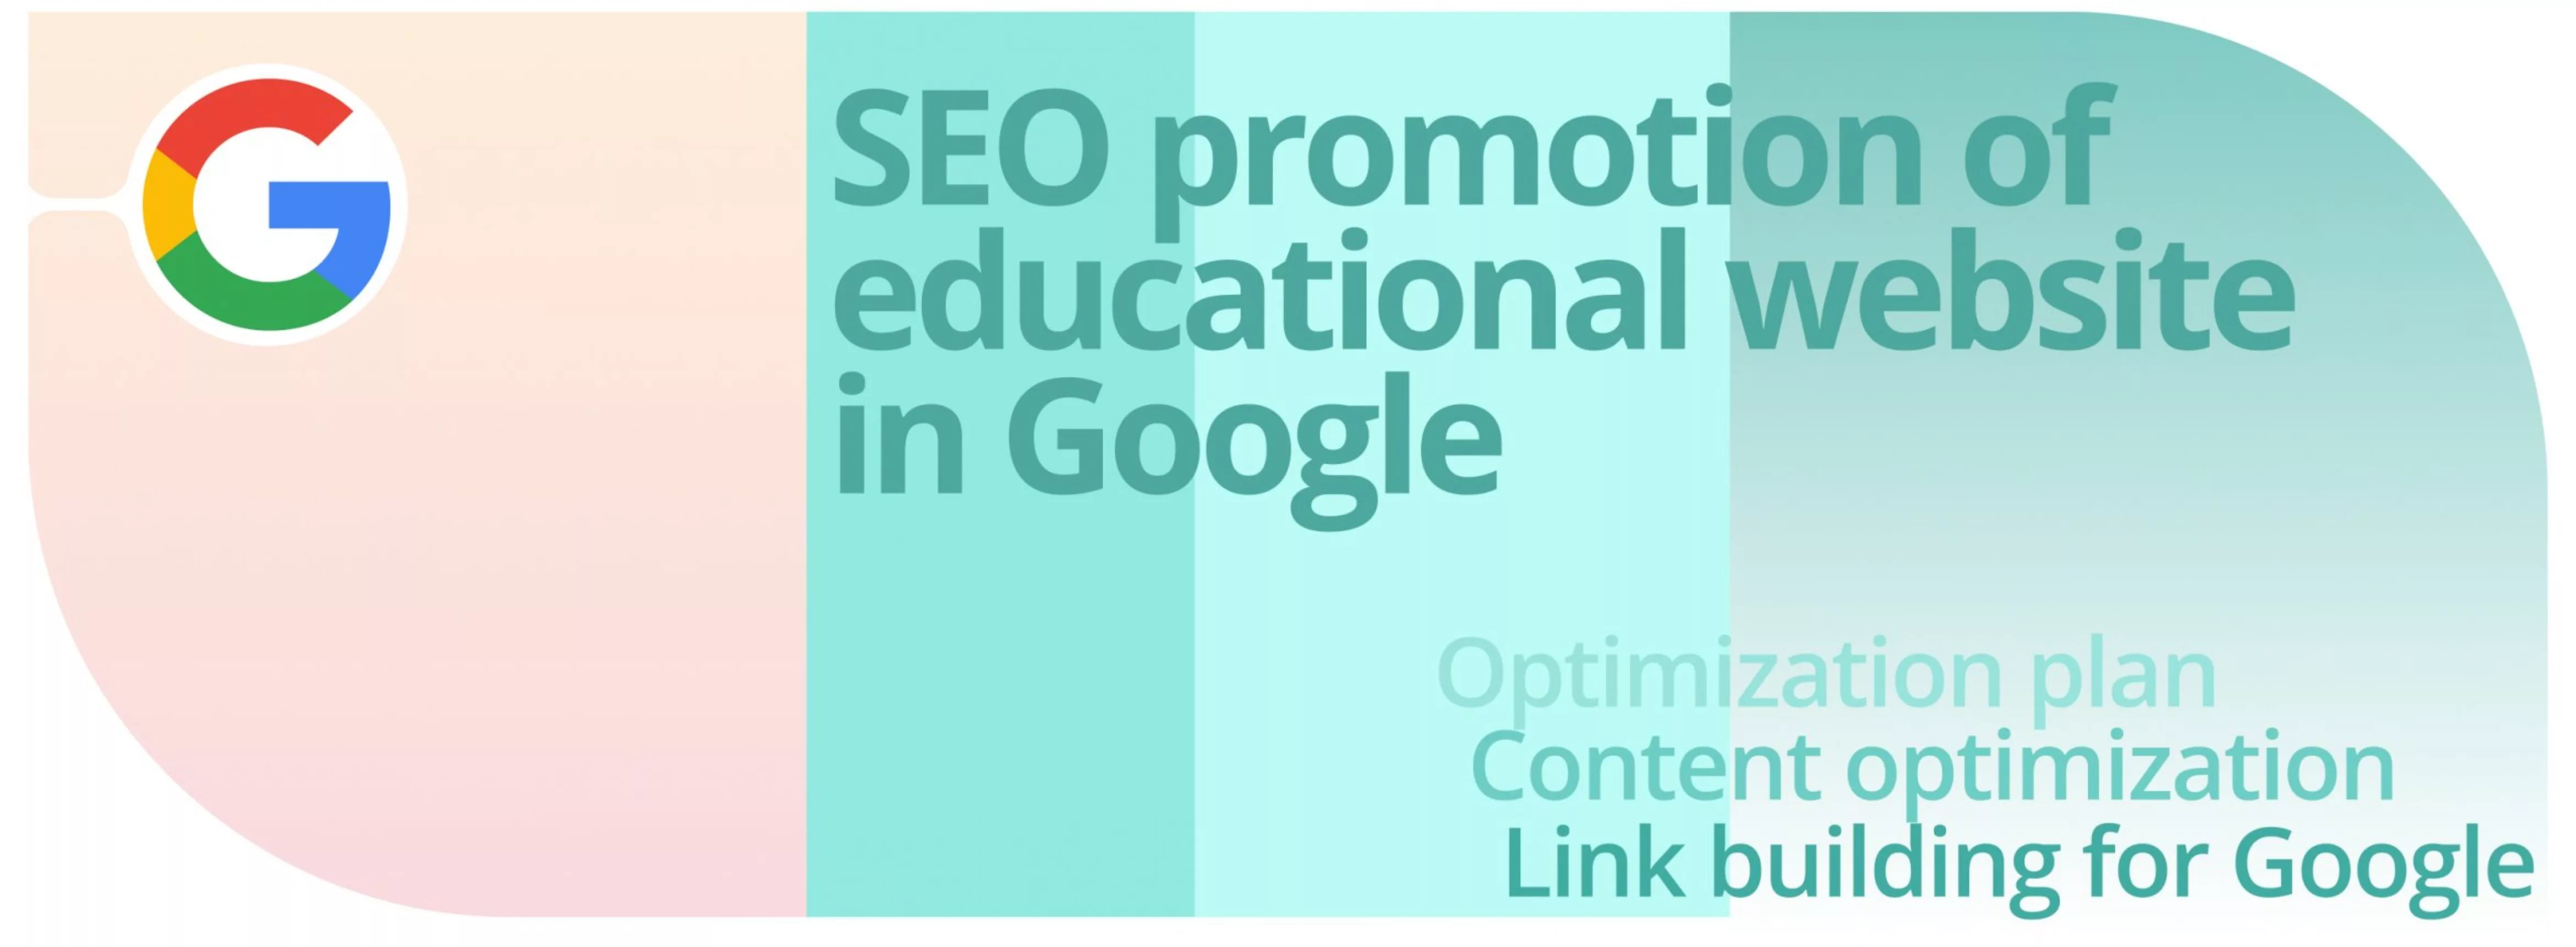 Cas : Promotion SEO d’un site web éducatif dans Google.